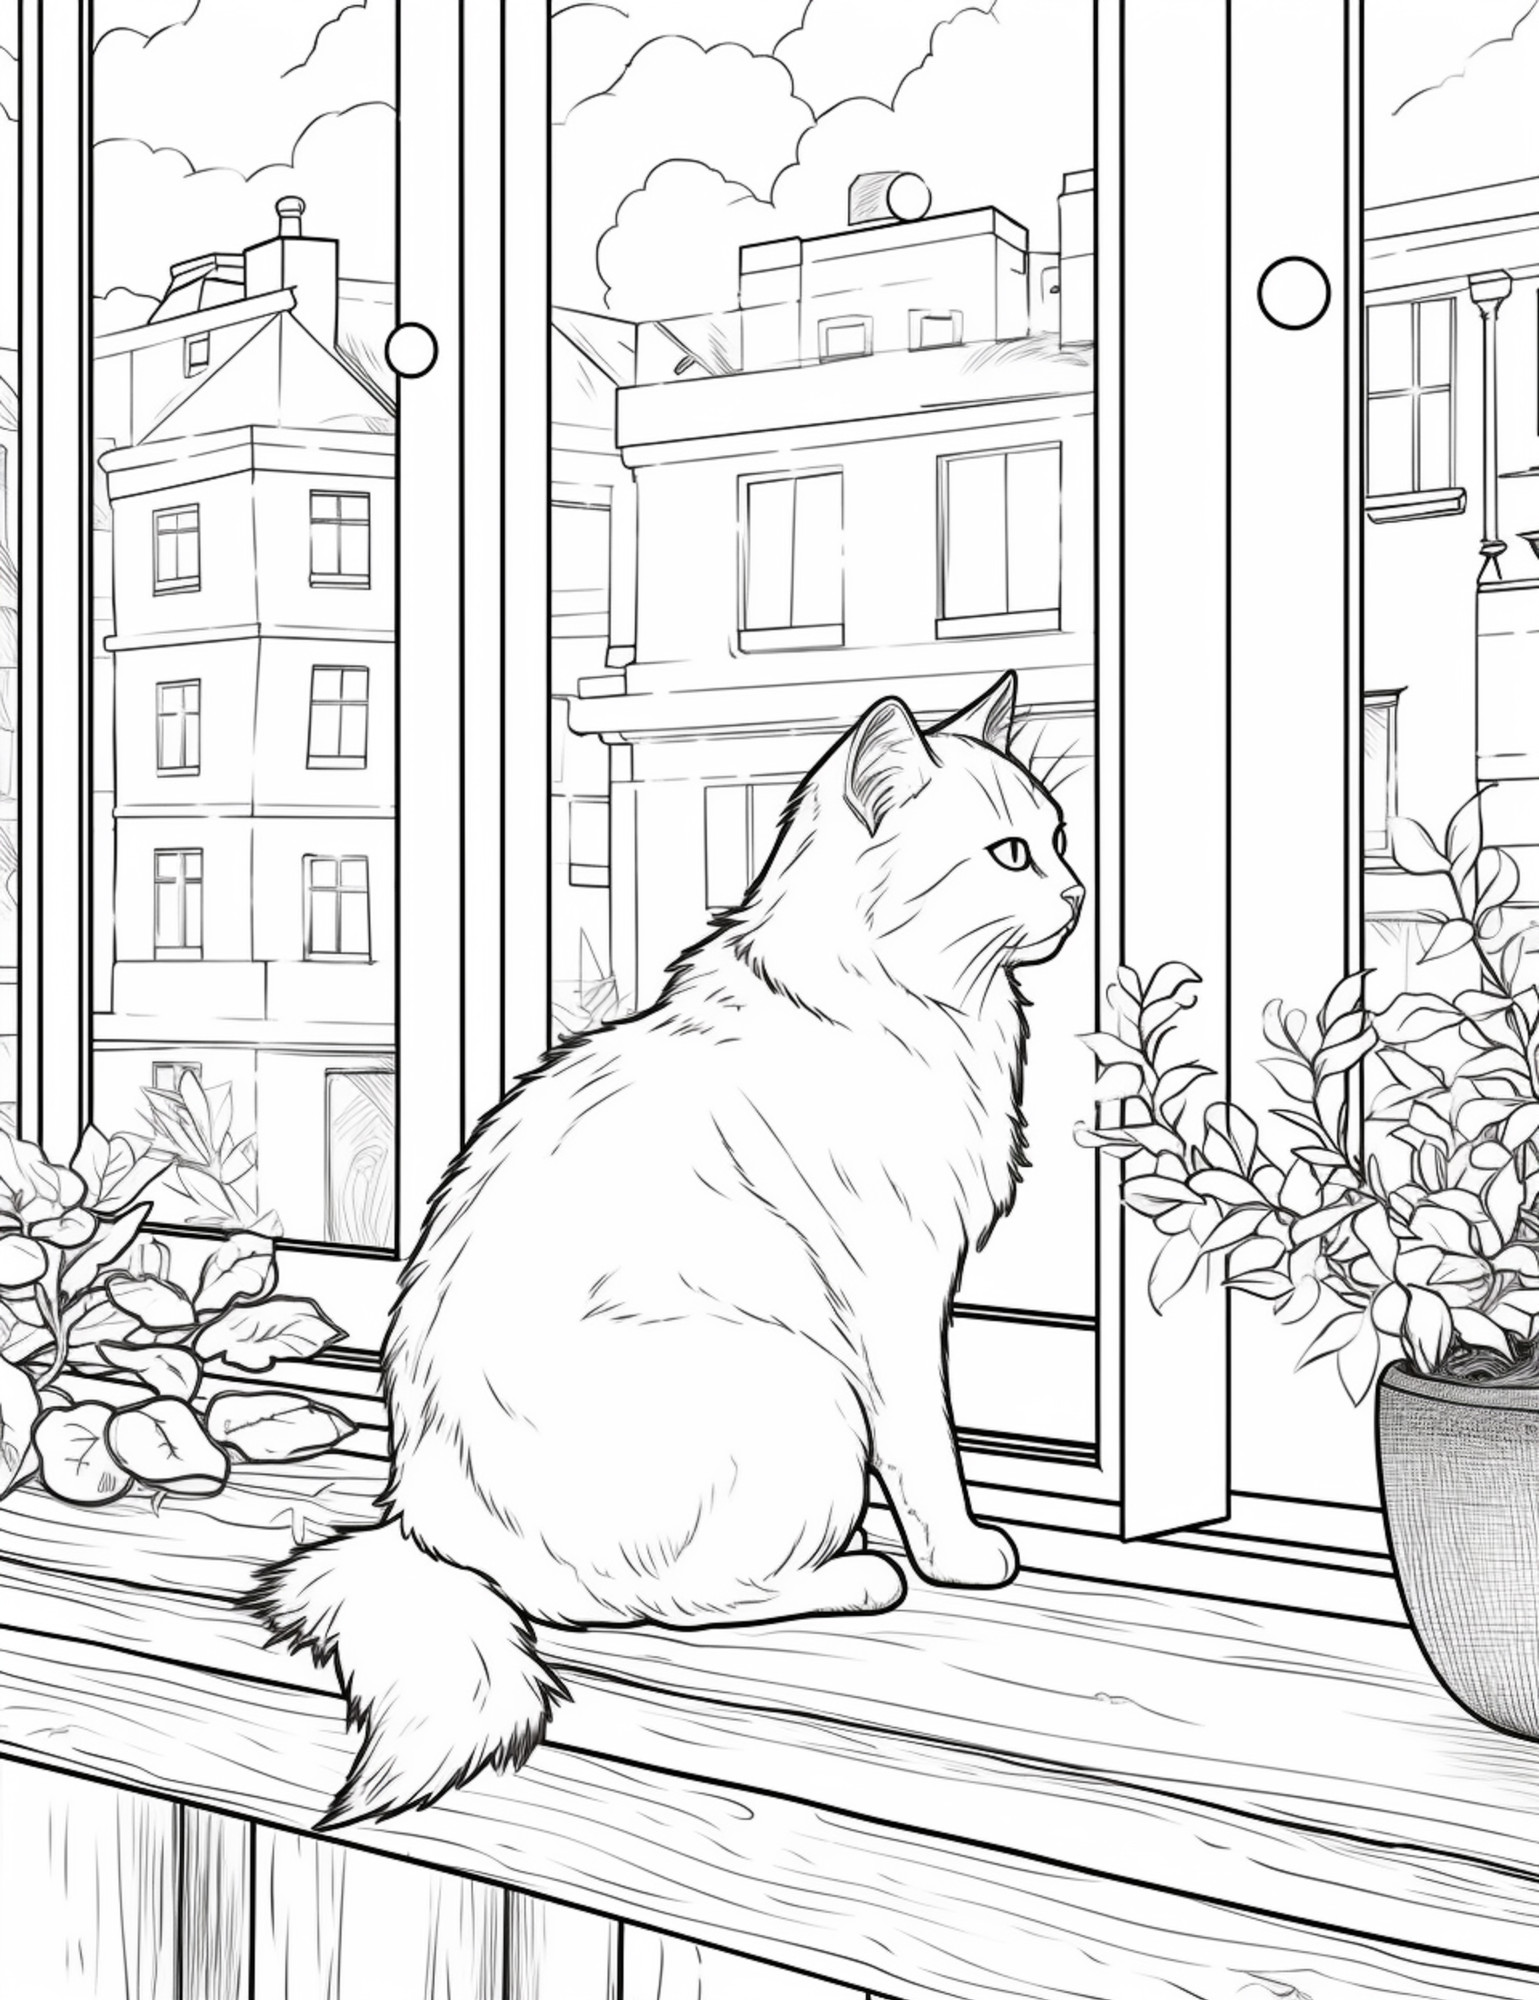 Раскраска для детей: кошка сидит на подоконнике и смотрящих в окно